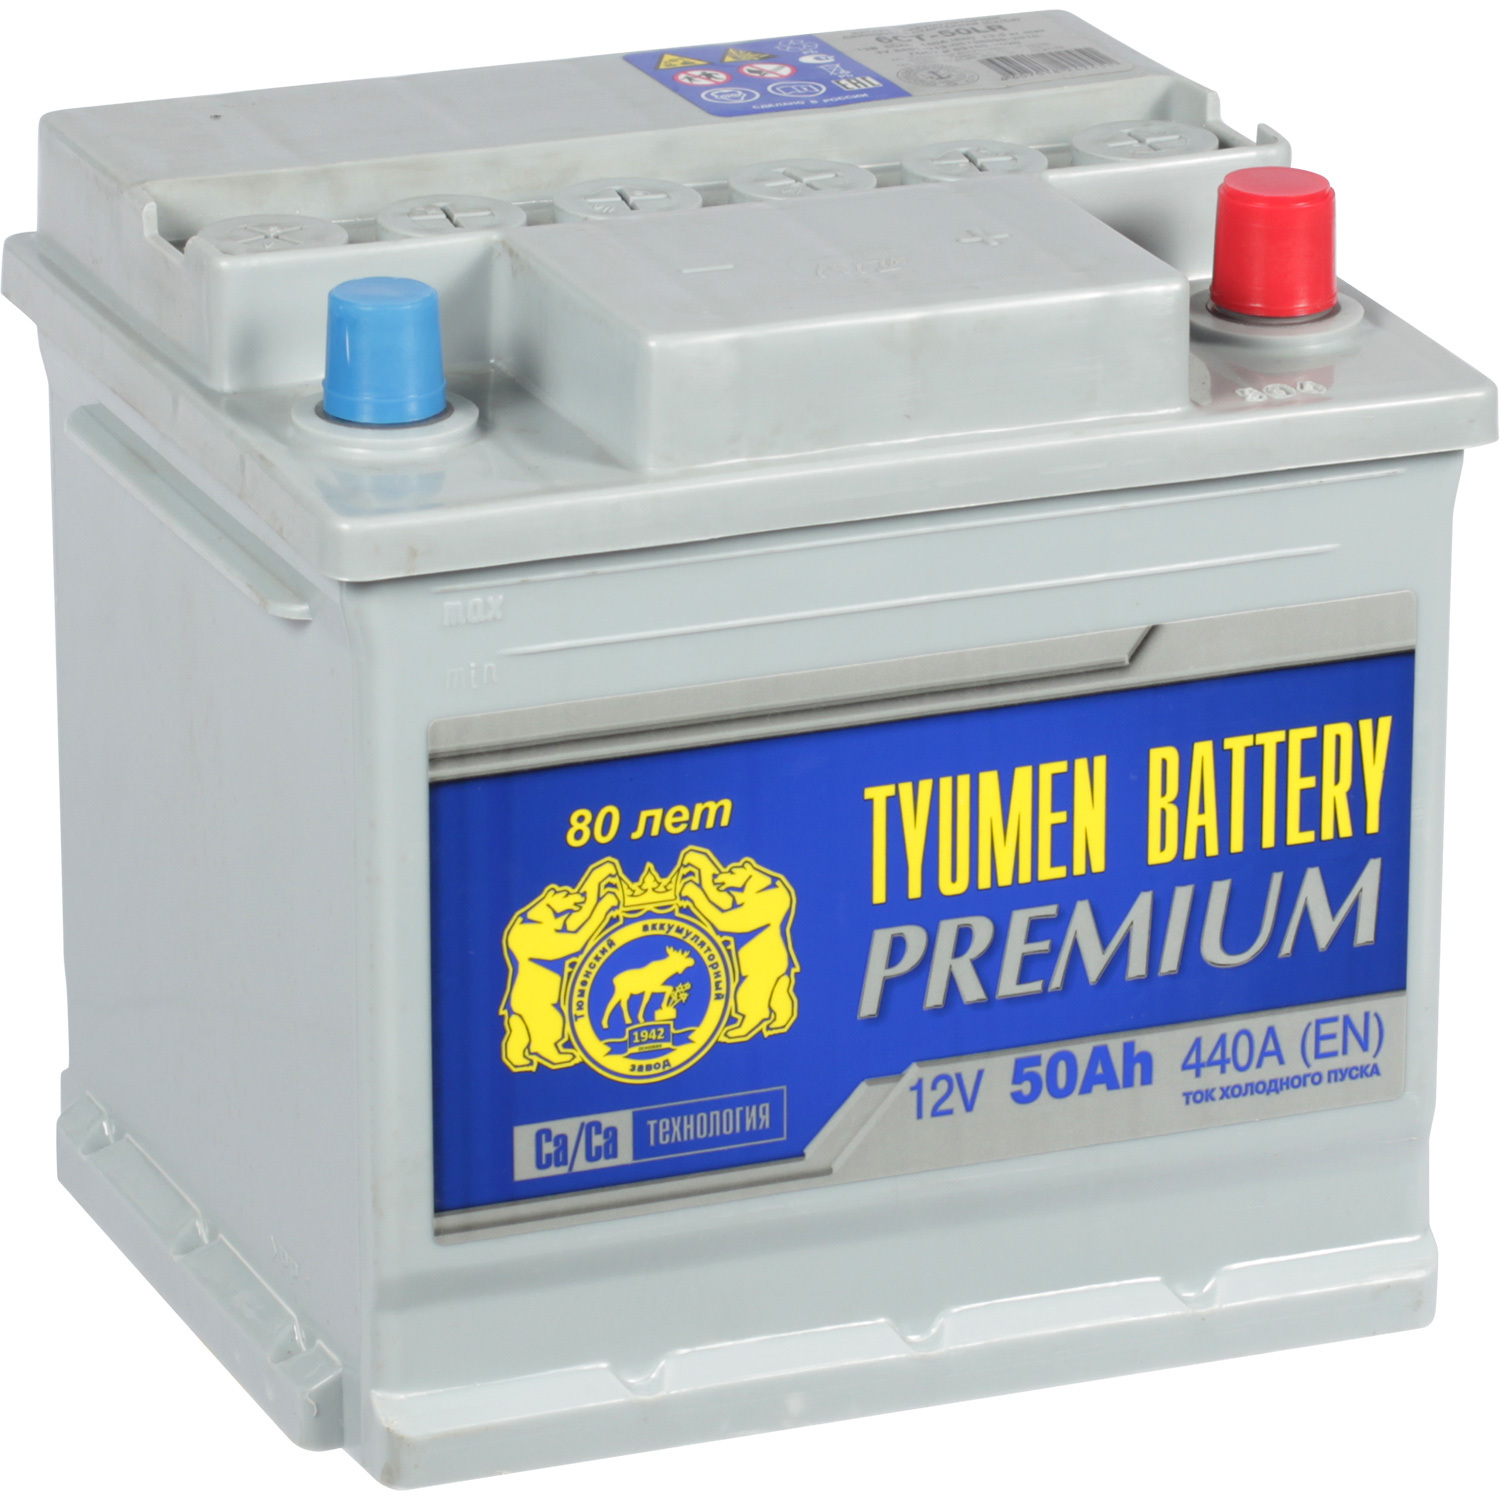 Tyumen Battery Автомобильный аккумулятор Tyumen Battery Premium 50 Ач обратная полярность L1 tyumen battery автомобильный аккумулятор tyumen battery 65 ач обратная полярность d23l